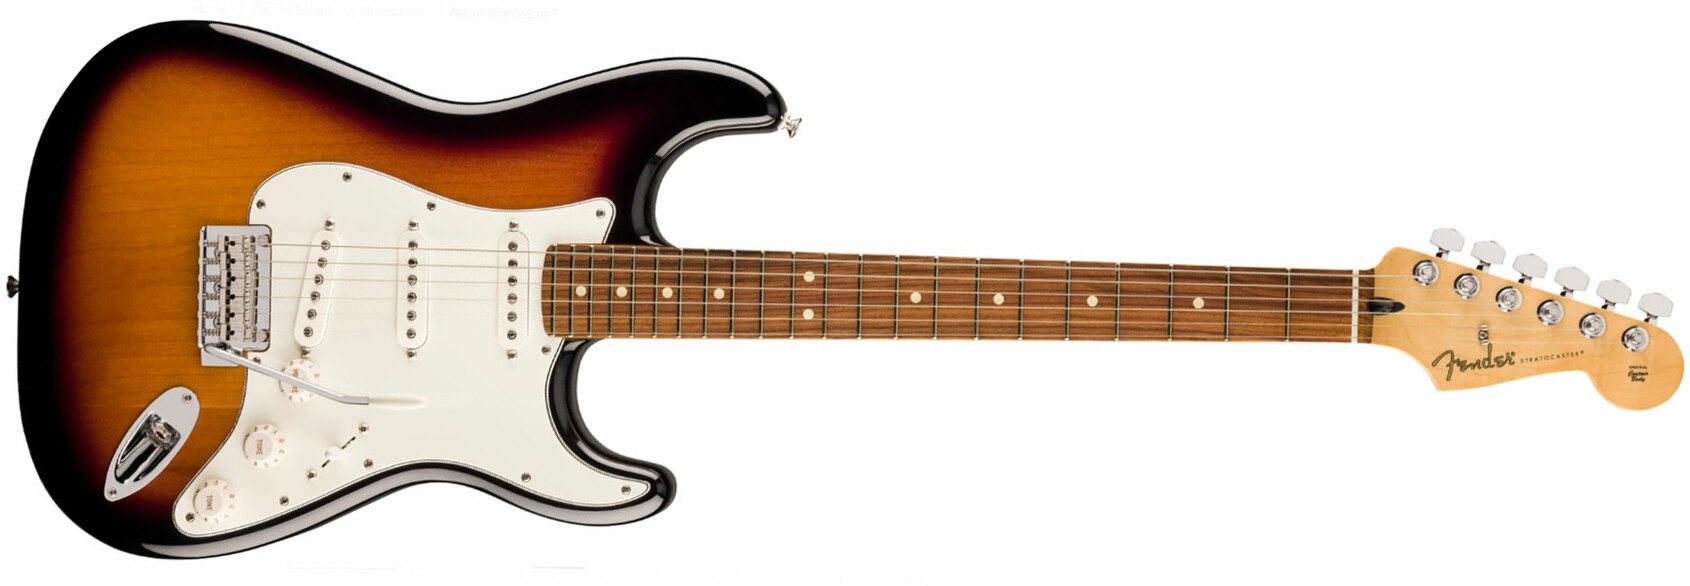 Fender Strat Player 70th Anniversary 3s Trem Pf - 2-color Sunburst - Guitarra eléctrica con forma de str. - Main picture